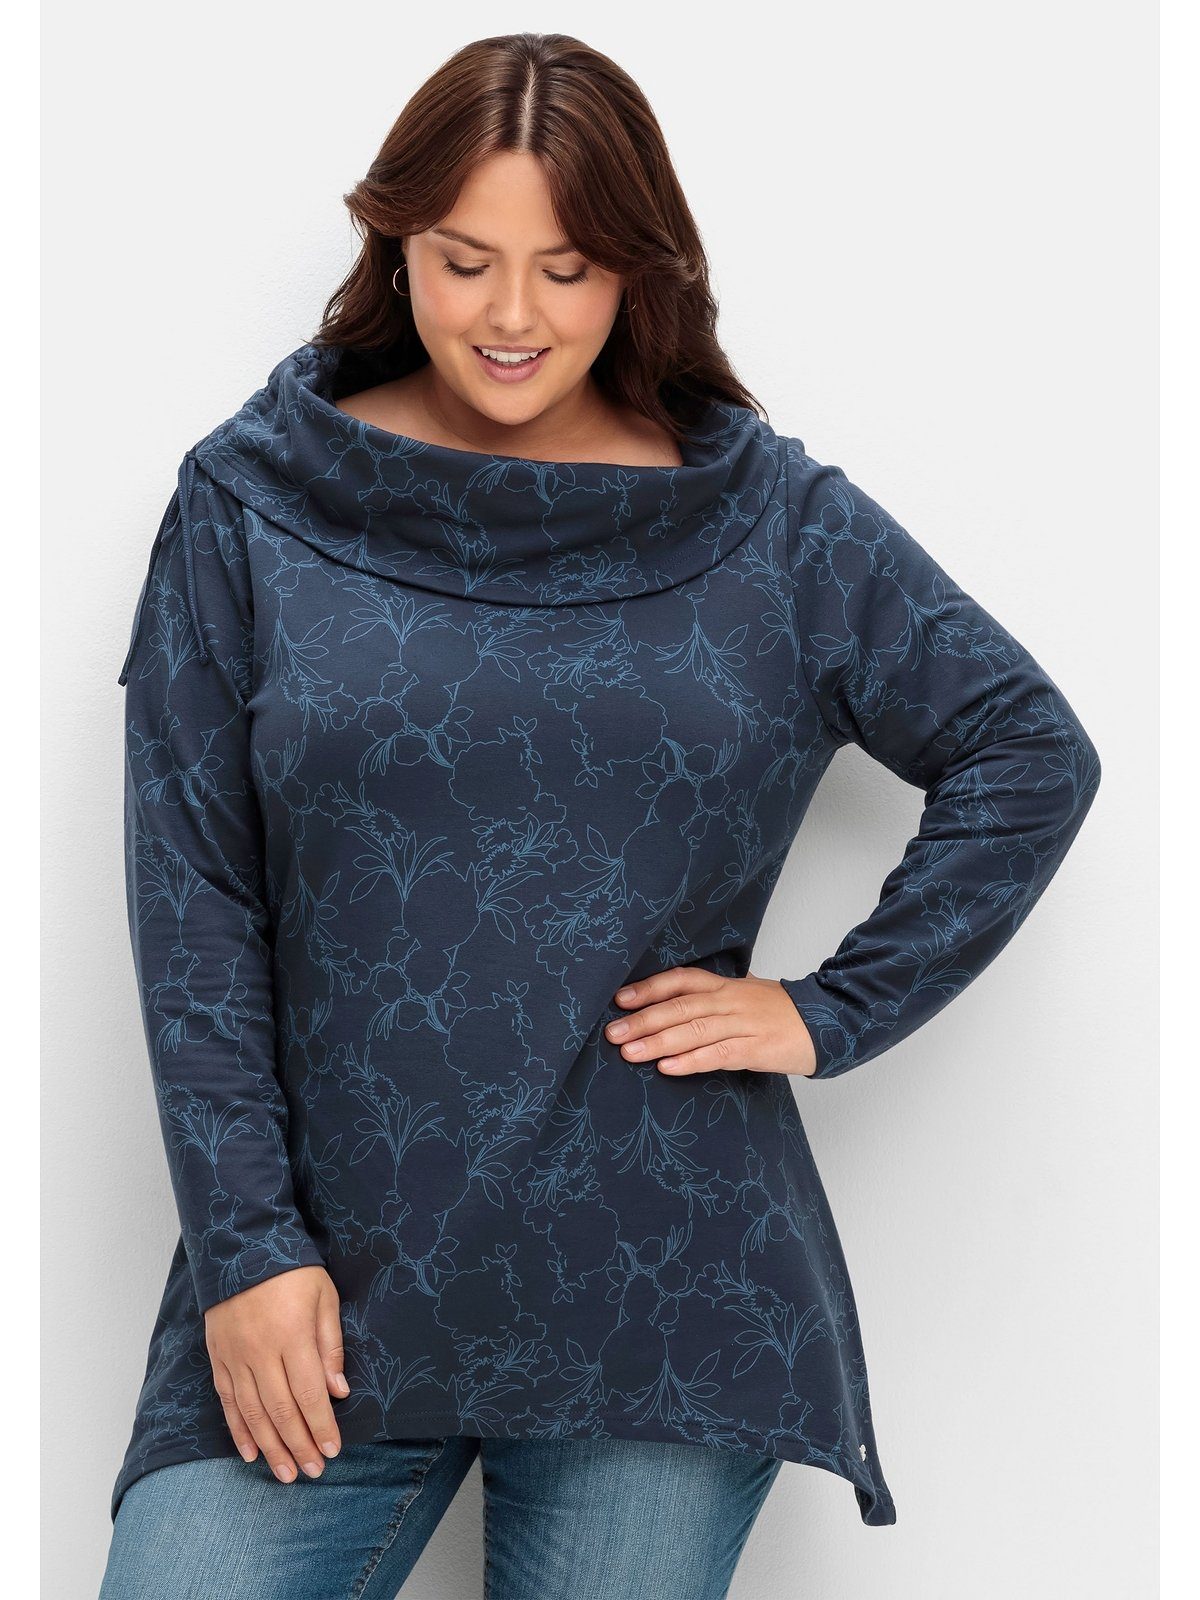 Sheego Sweatshirt Große Größen mit Alloverdruck, in Zipfelform | Sweatshirts